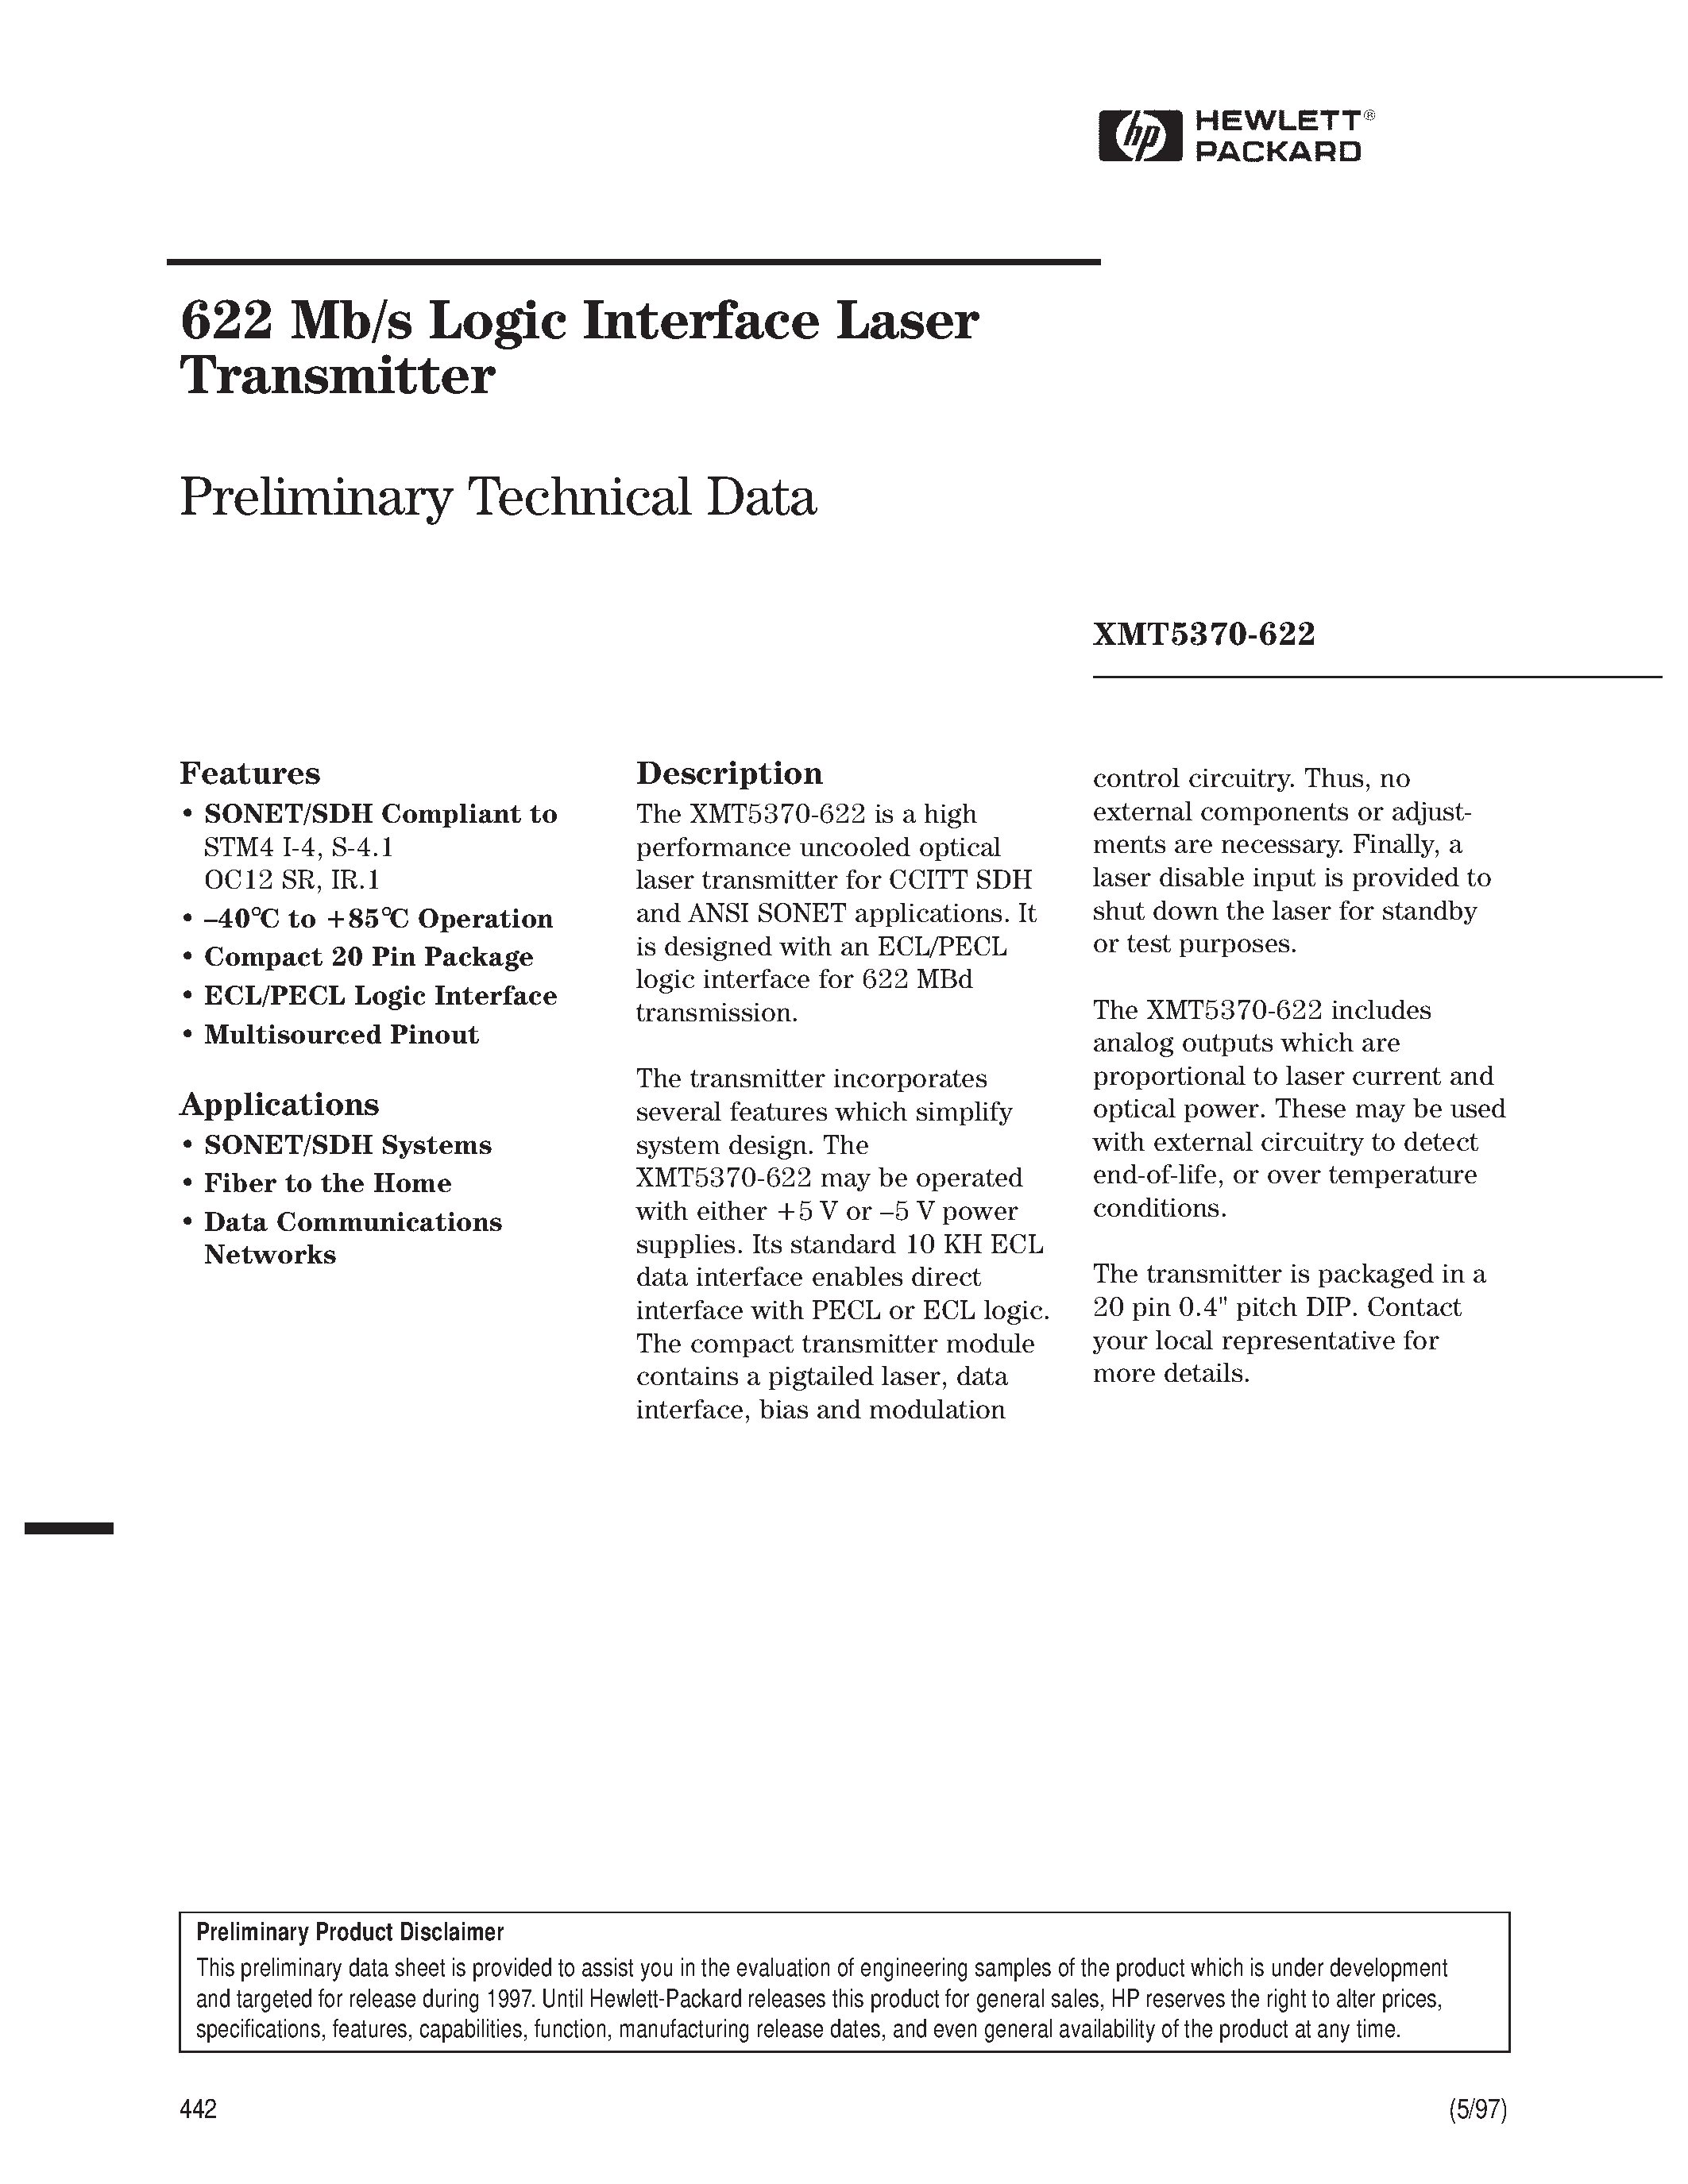 Datasheet XMT5370B-622-SC - 622 Mb/s Logic Interface Laser Transmitter page 1